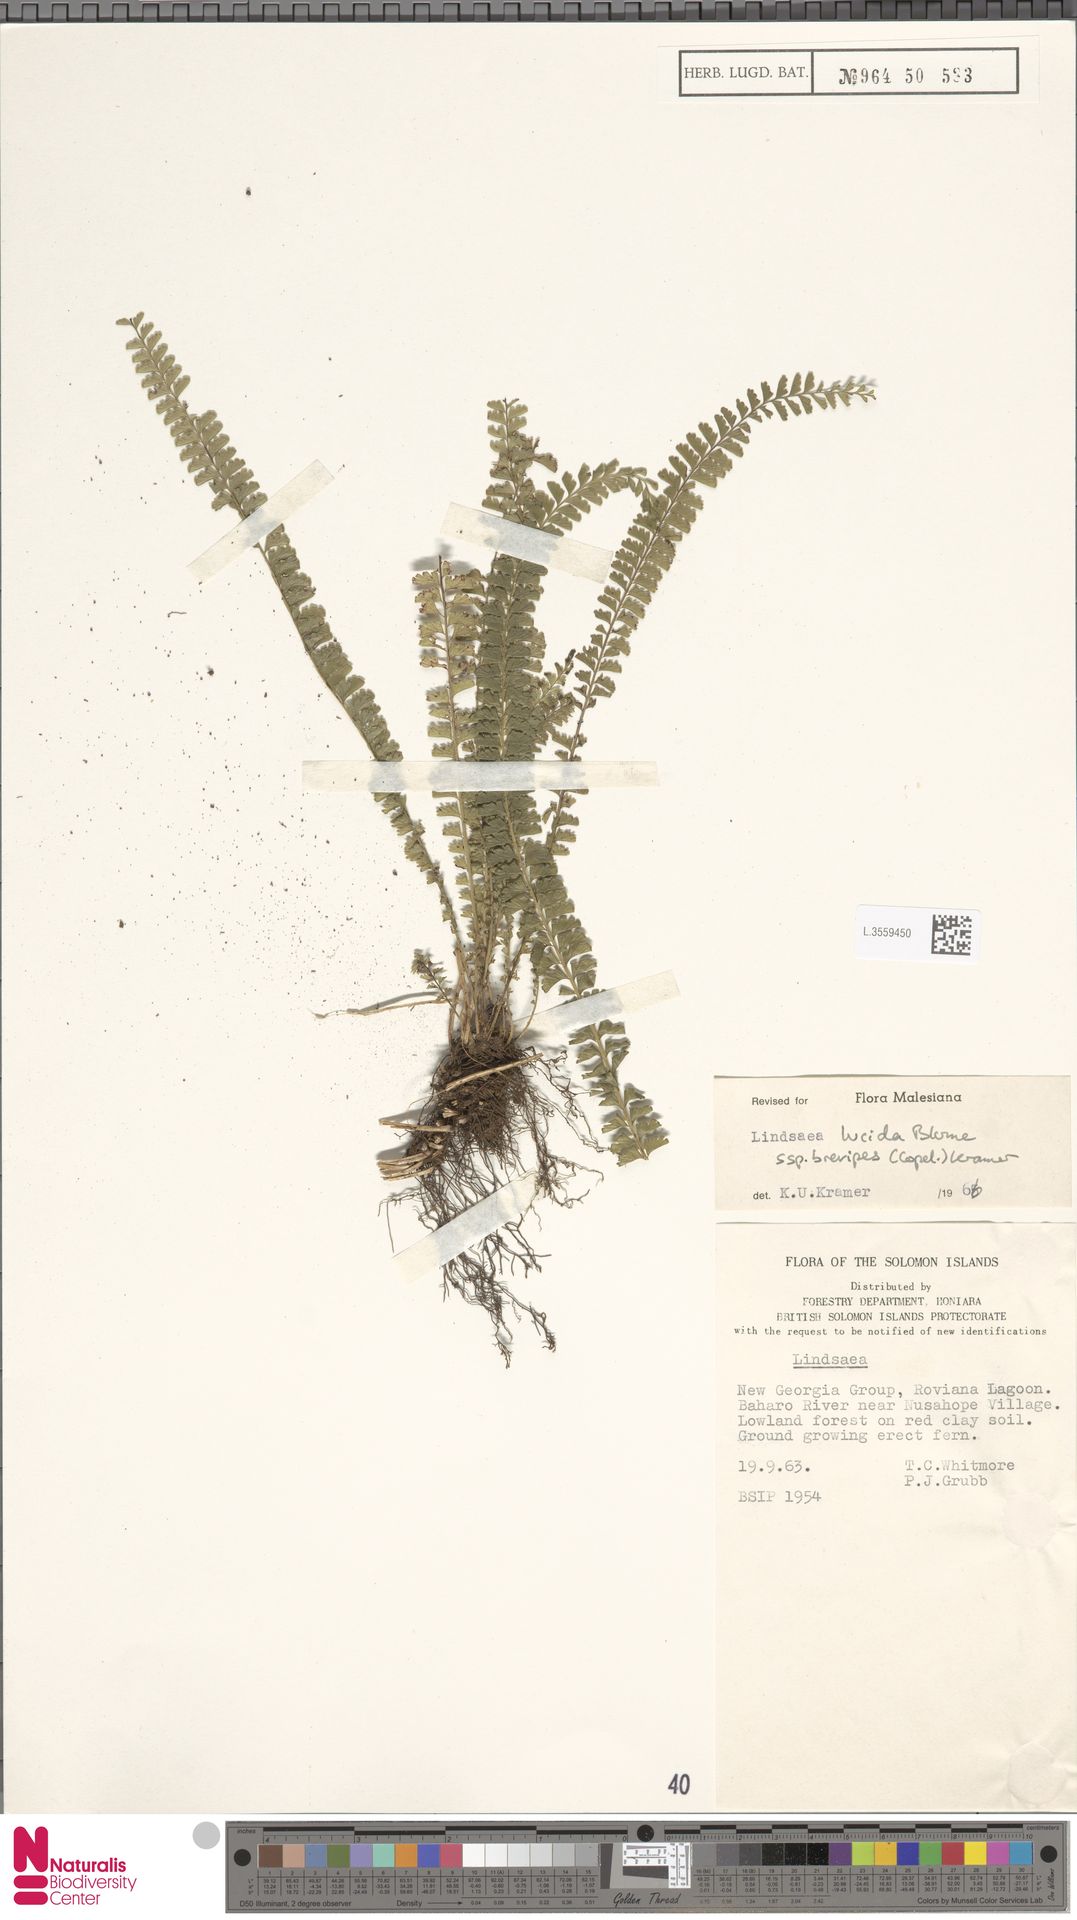 Lindsaea brevipes image